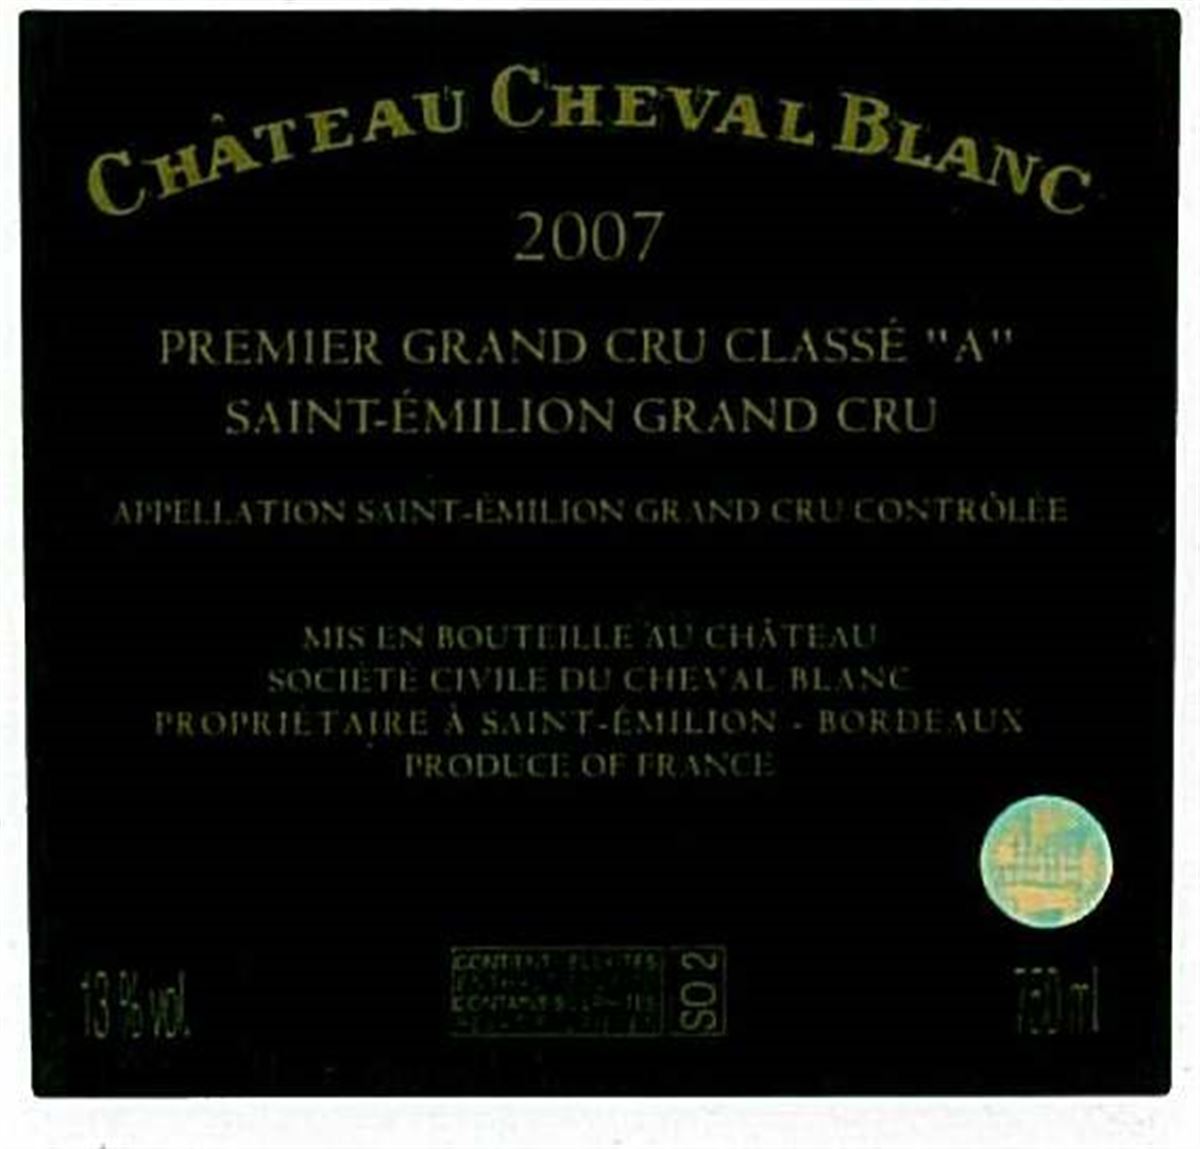 Château Cheval Blanc Saint-Emilion Bordeaux Produce Of France www.luxfood-shop.fr